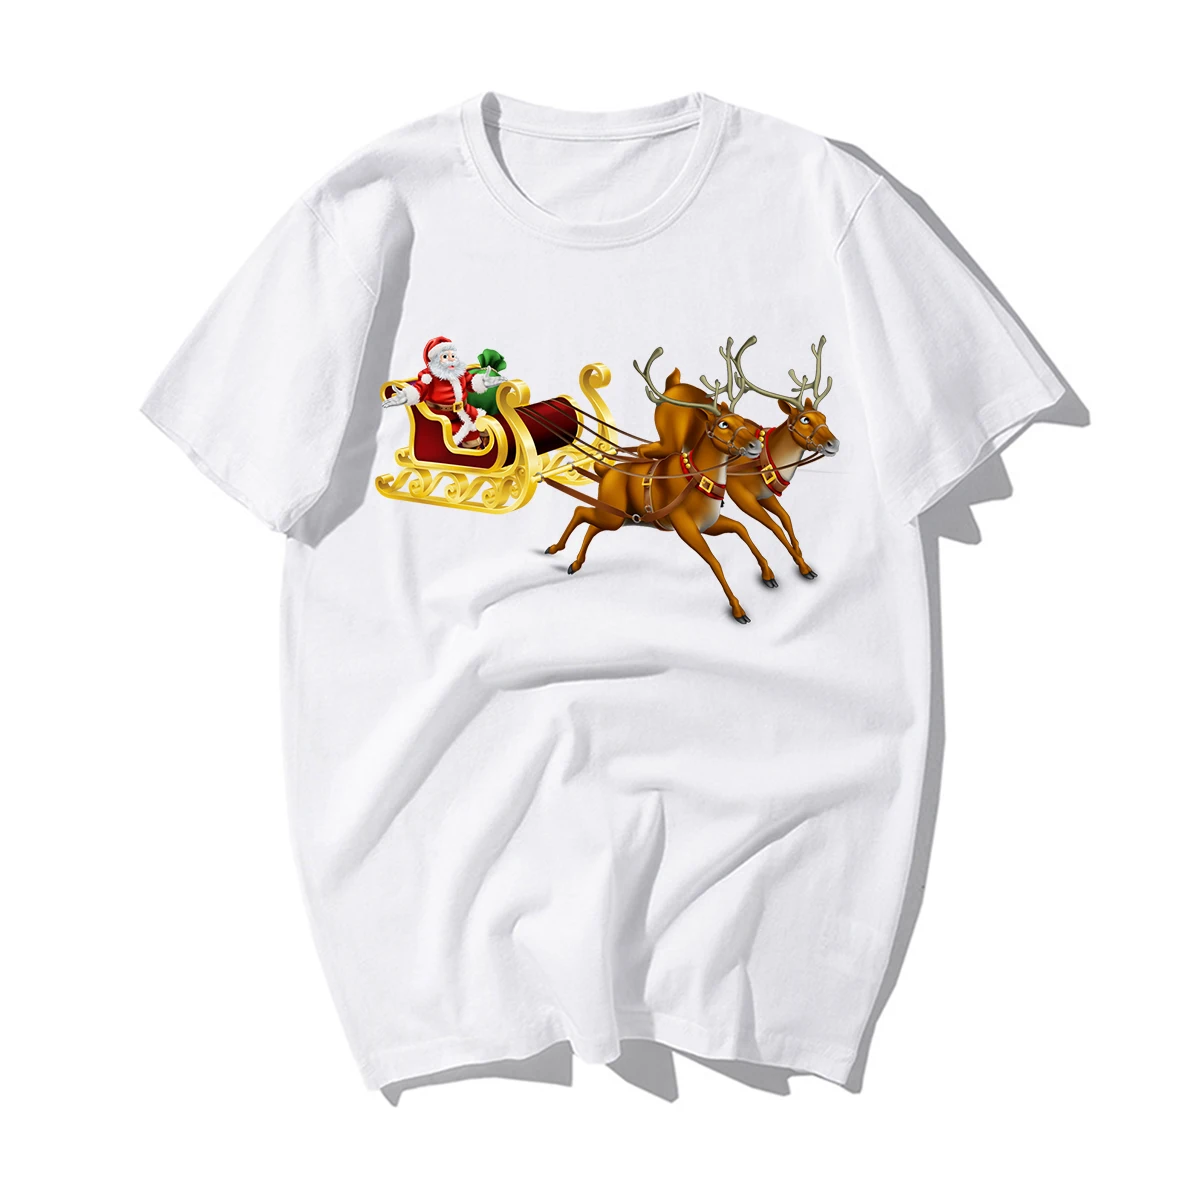 Забавные веселые футболки с рождественским узором, мужские Новые повседневные хлопковые футболки с оленями, Санта Клаусом, рождественской елкой, мужские рождественские подарки на год - Цвет: BZ256